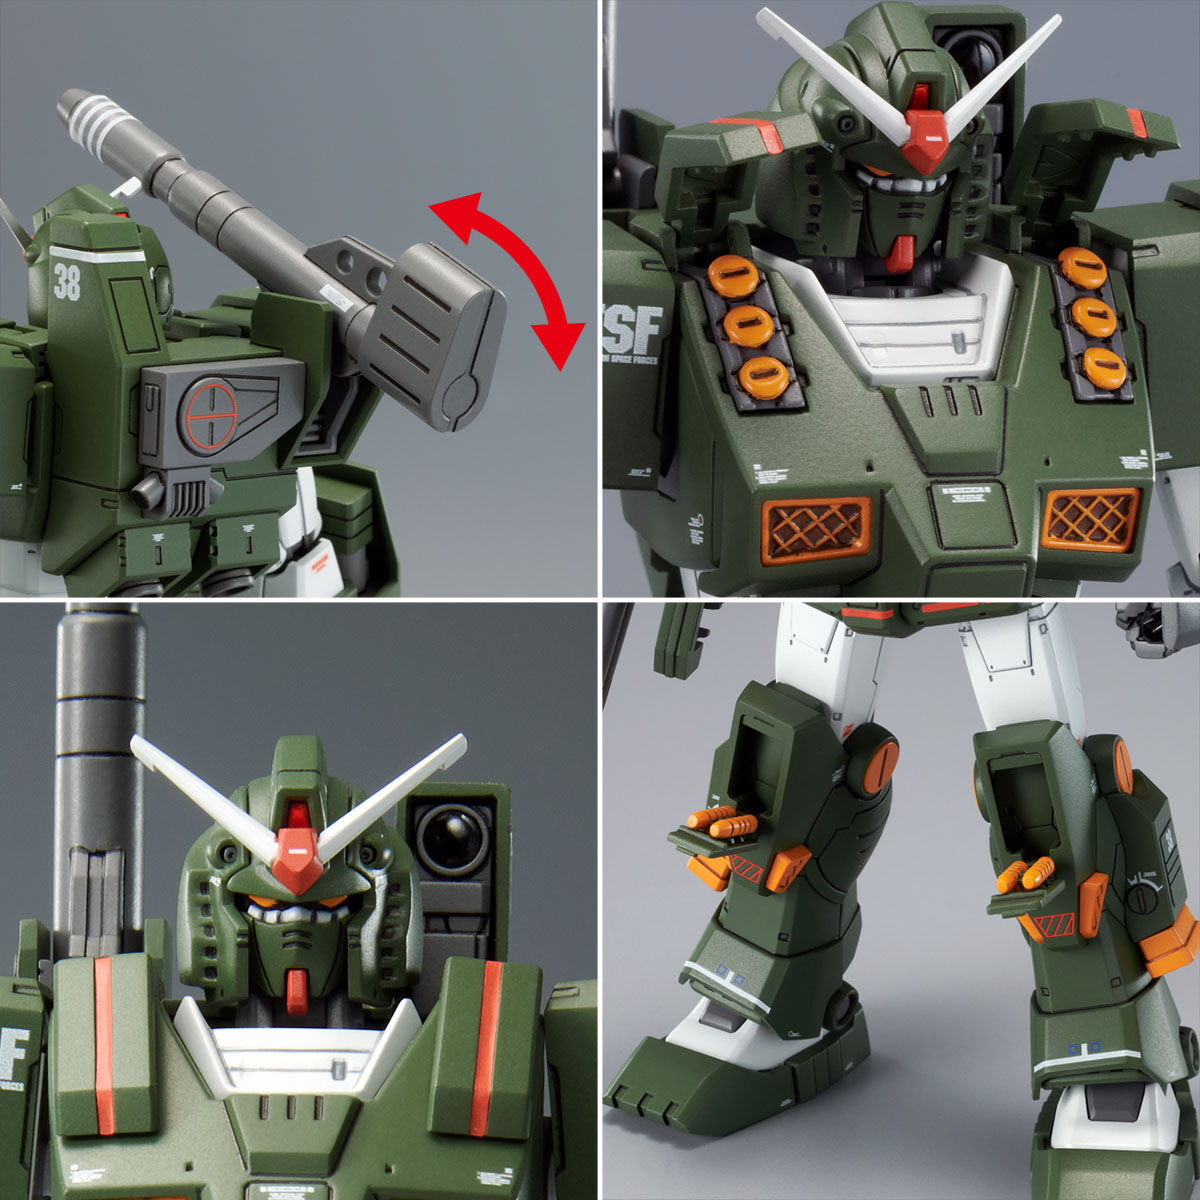 P Bandai Hg 1144 Full Armor Gundam Msd Ver Release Info